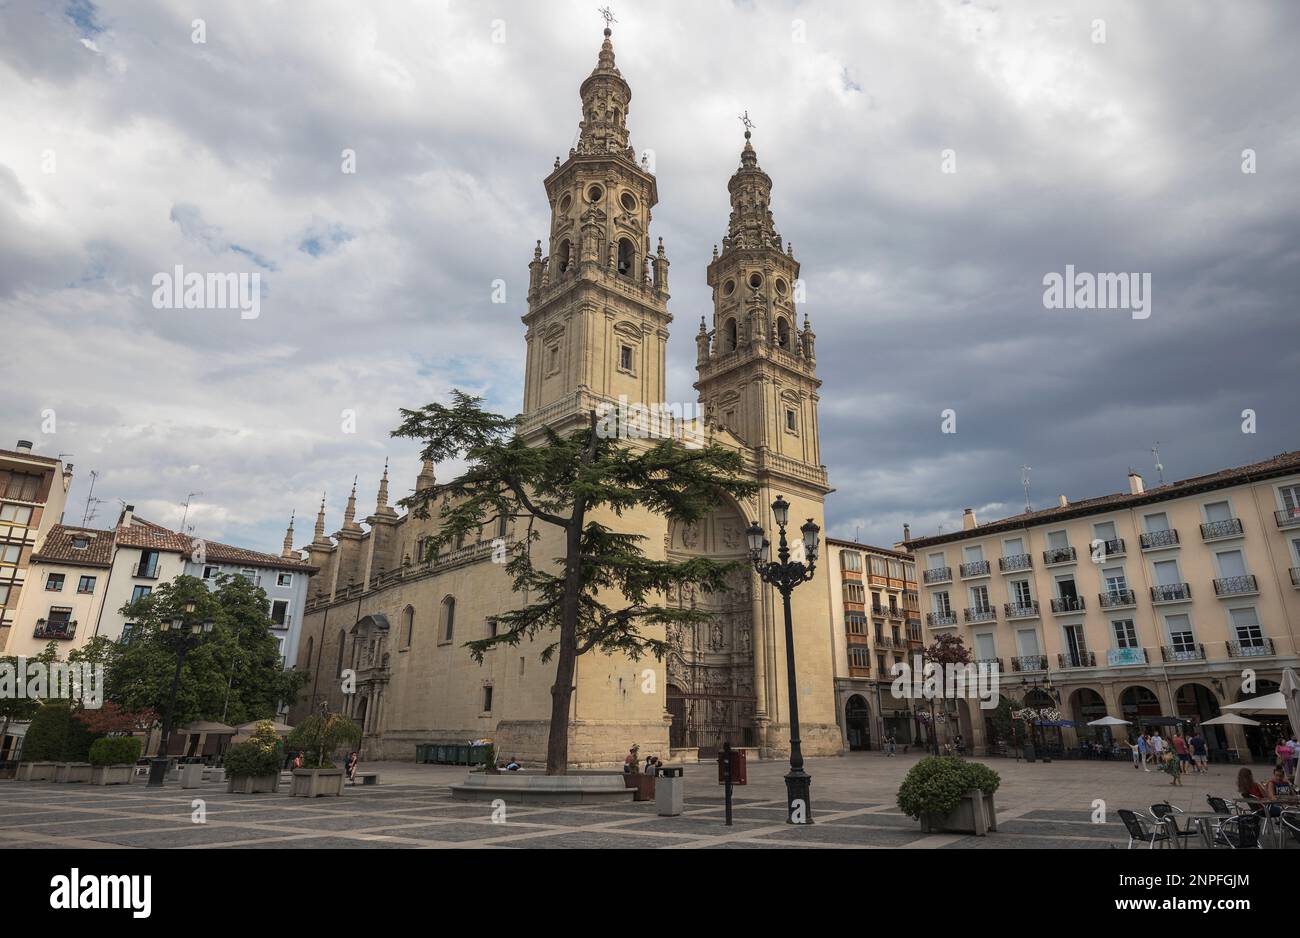 Die außergewöhnliche Kathedrale von Logroño, Spanien, zieht Touristen aus der ganzen Welt an, um ihre majestätische Architektur und lange Geschichte der Gottesdienste zu erleben. Stockfoto